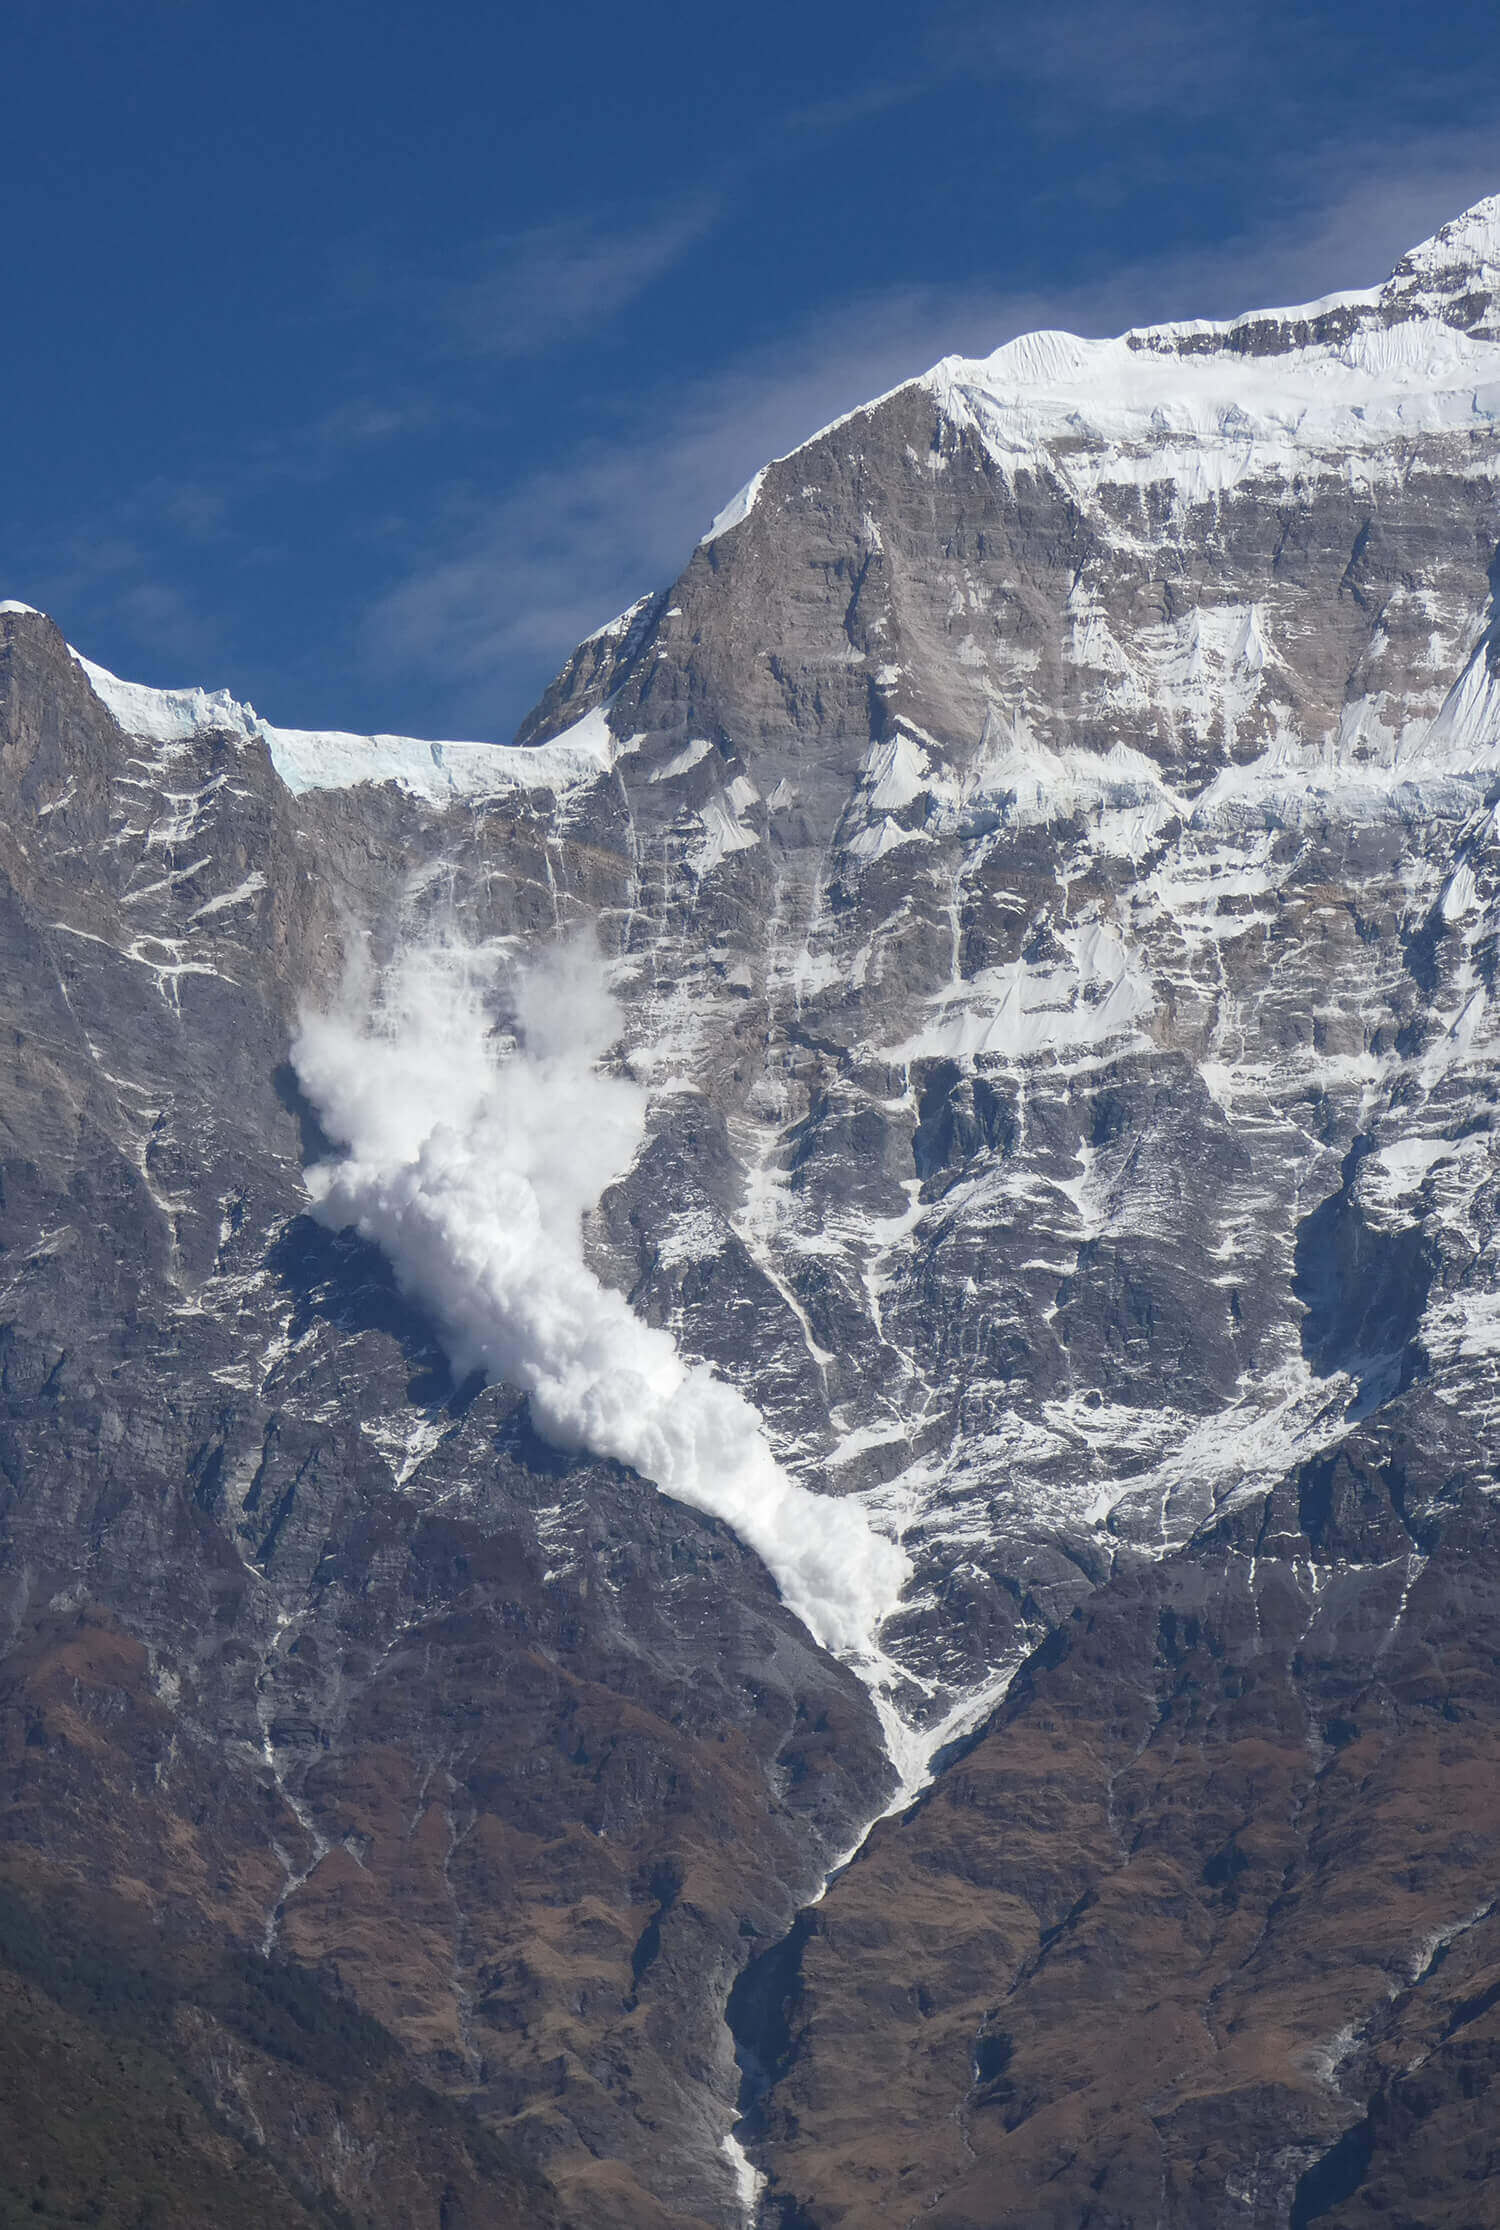 лавина на горе Гурджа (Gurja / Gurja Himal, 7193 м). Фото Nepali Times